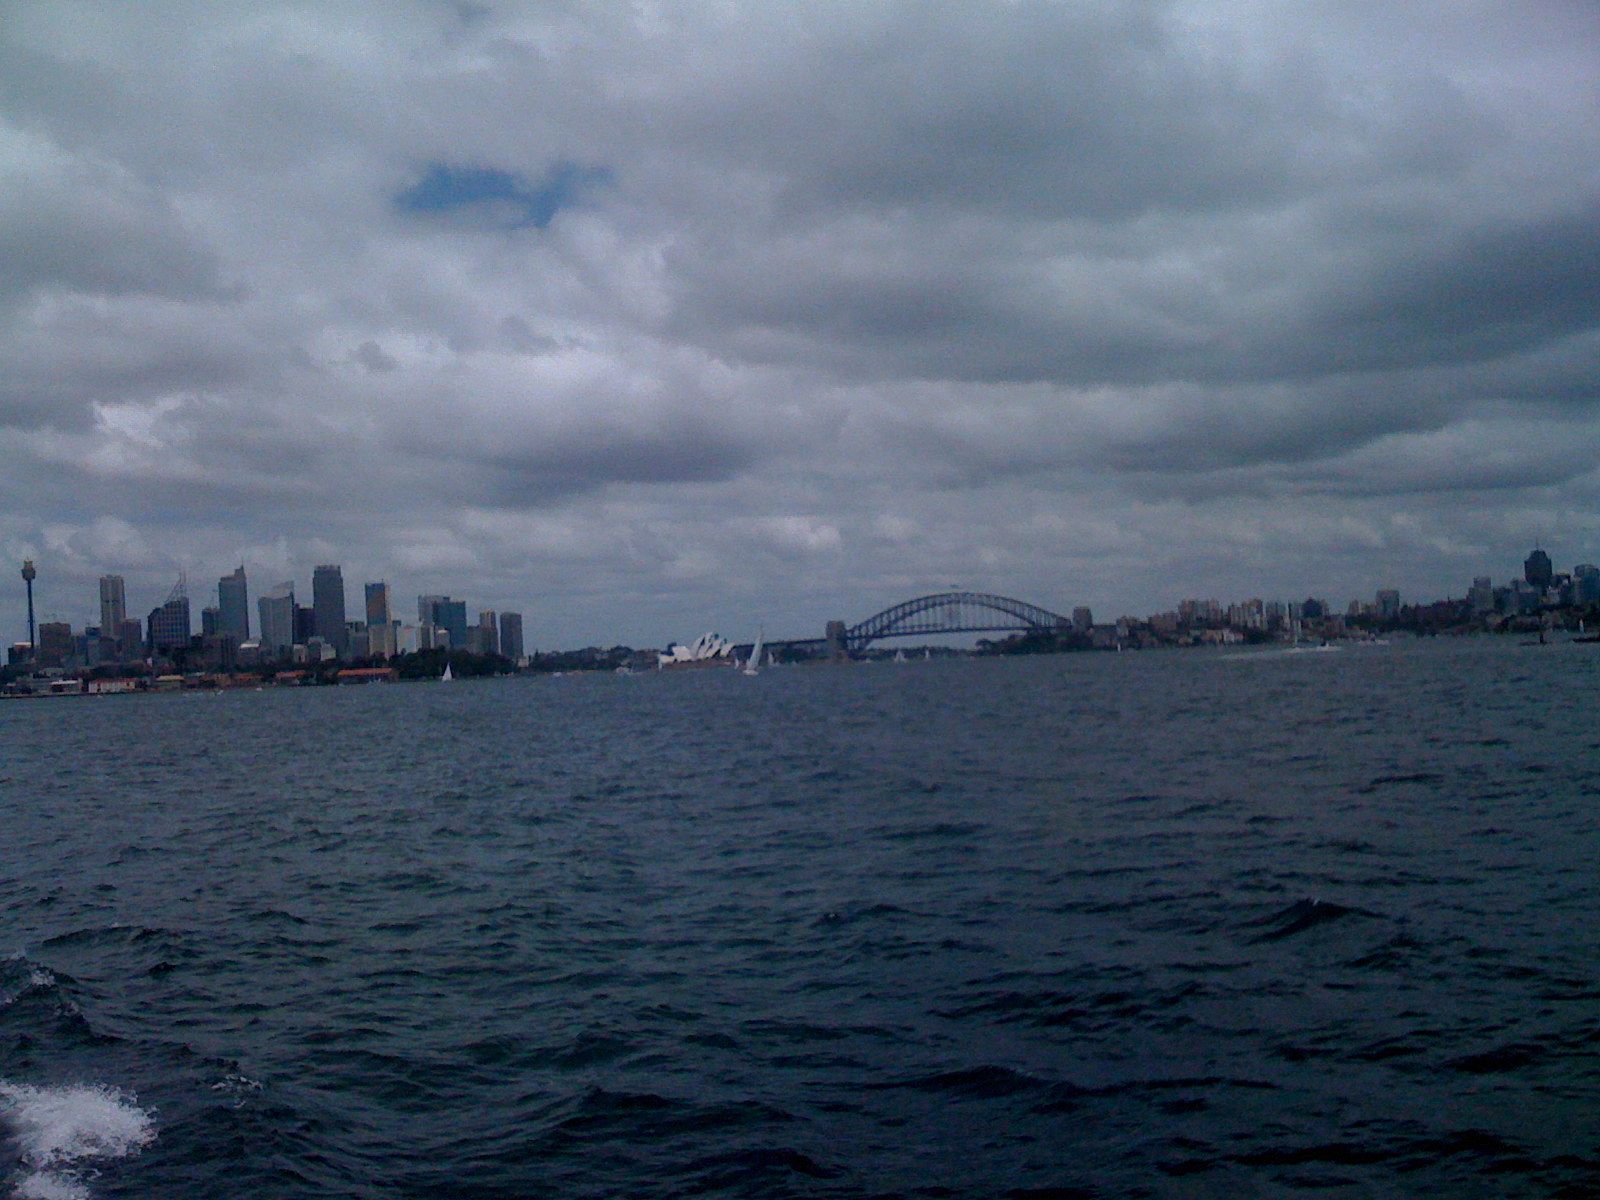 Sydney Harbour Bridge and City Skyline vom Wasser gesehen © IOCO